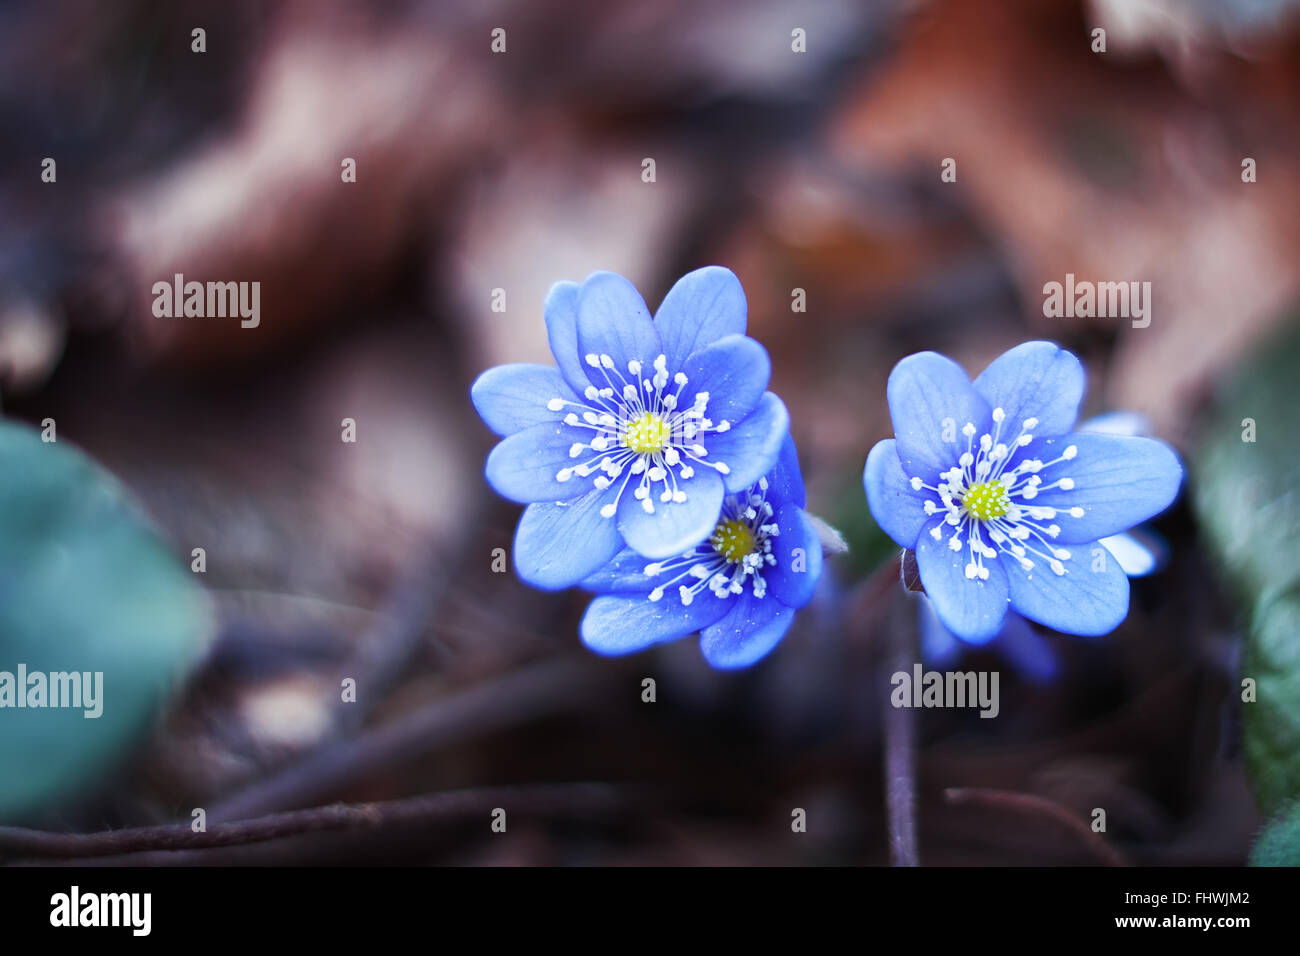 Début du printemps bleu fleurs hepatica ou snowdrop dans son contexte naturel Banque D'Images